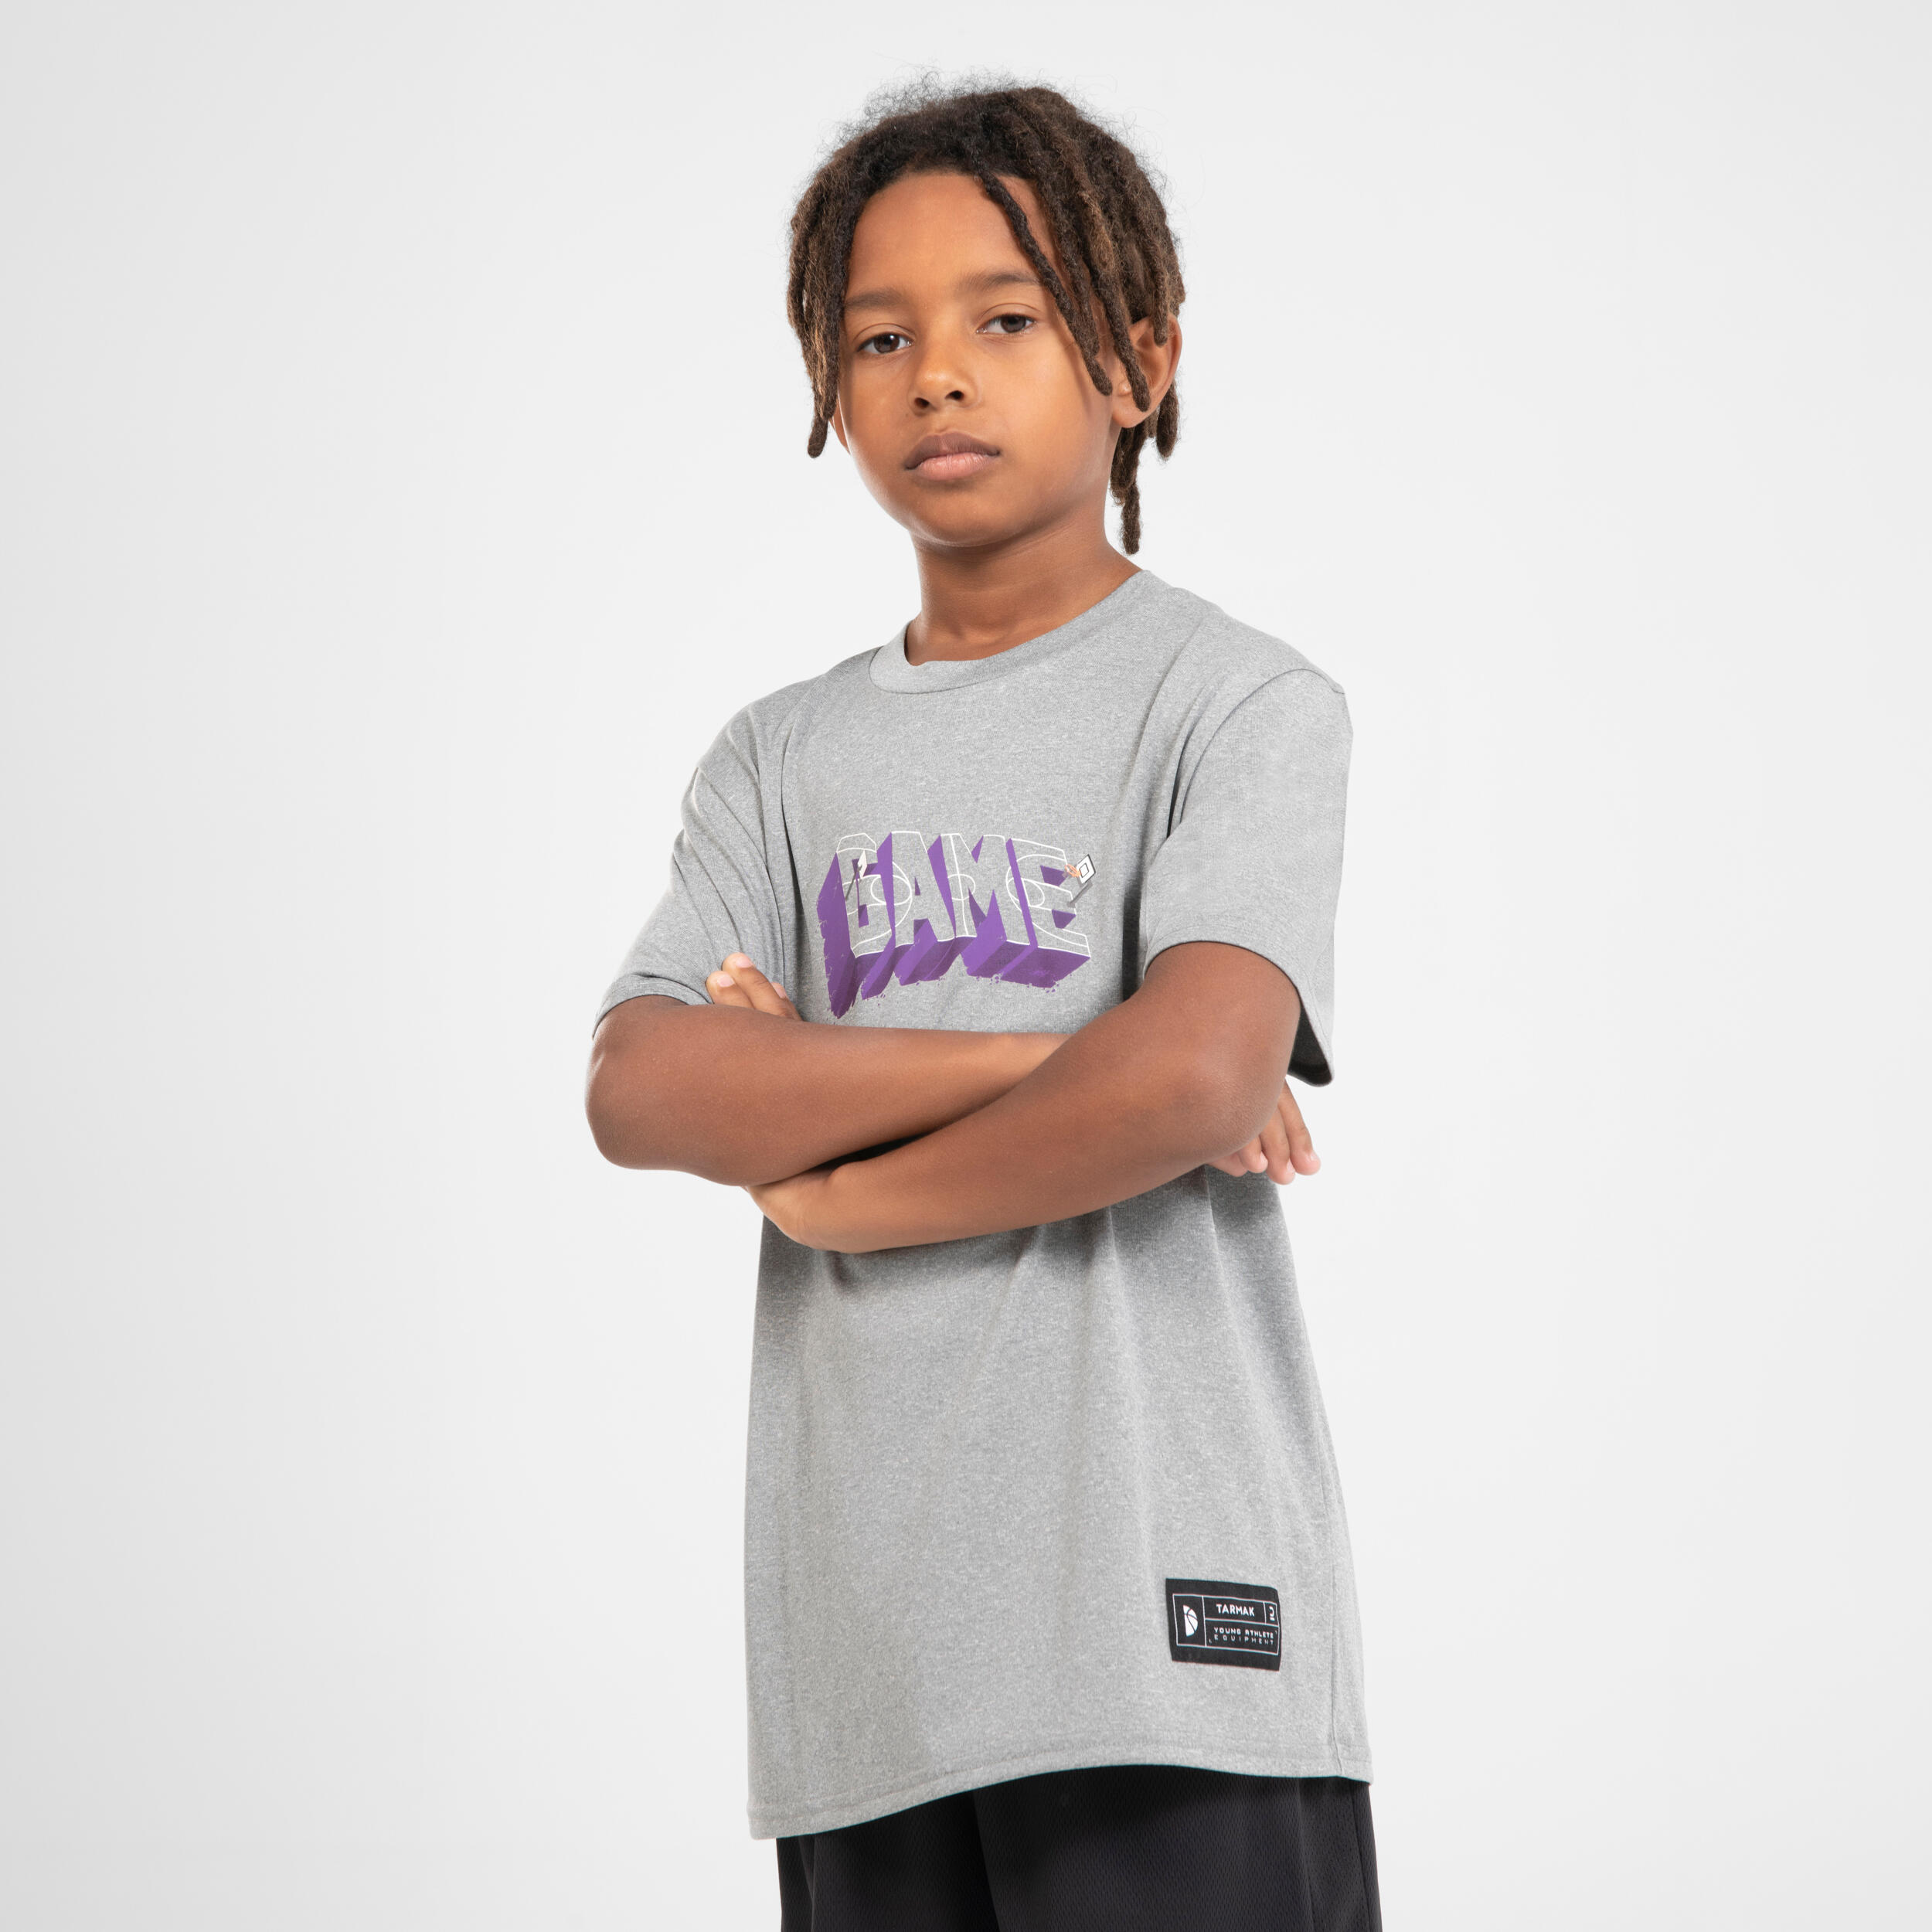 Kids' Basketball T-Shirt / Jersey TS500 Fast - Grey 2/6